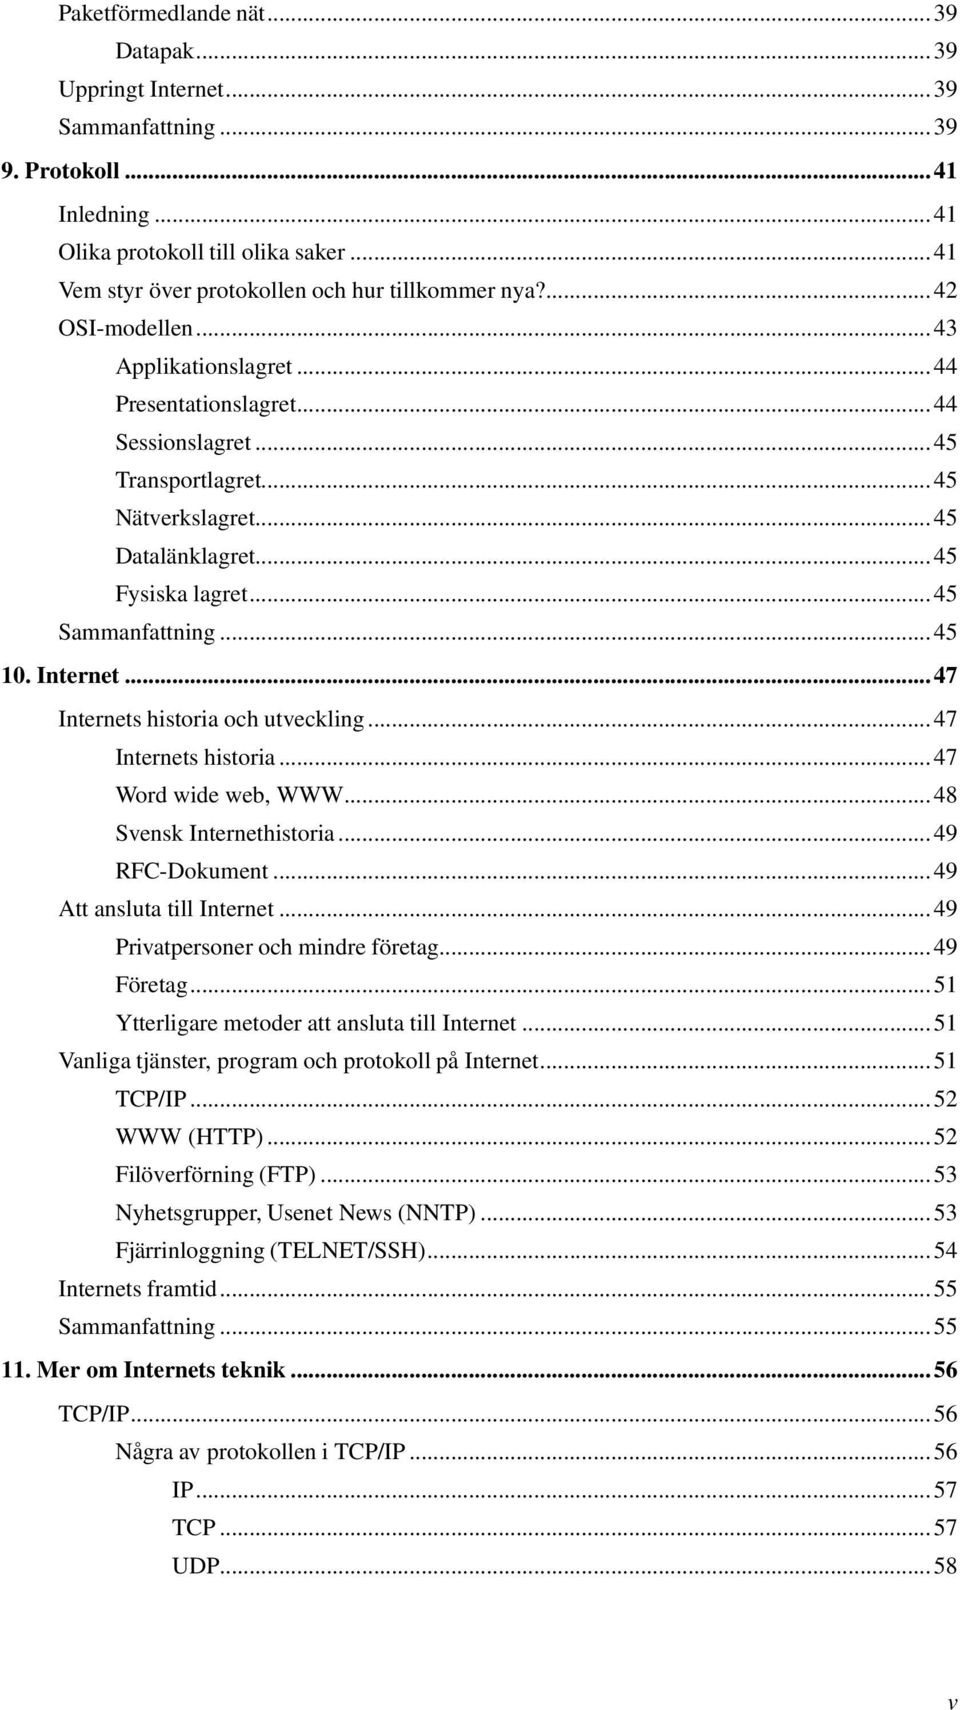 Internet...47 Internets historia och utveckling...47 Internets historia...47 Word wide web, WWW...48 Svensk Internethistoria...49 RFC-Dokument...49 Att ansluta till Internet.